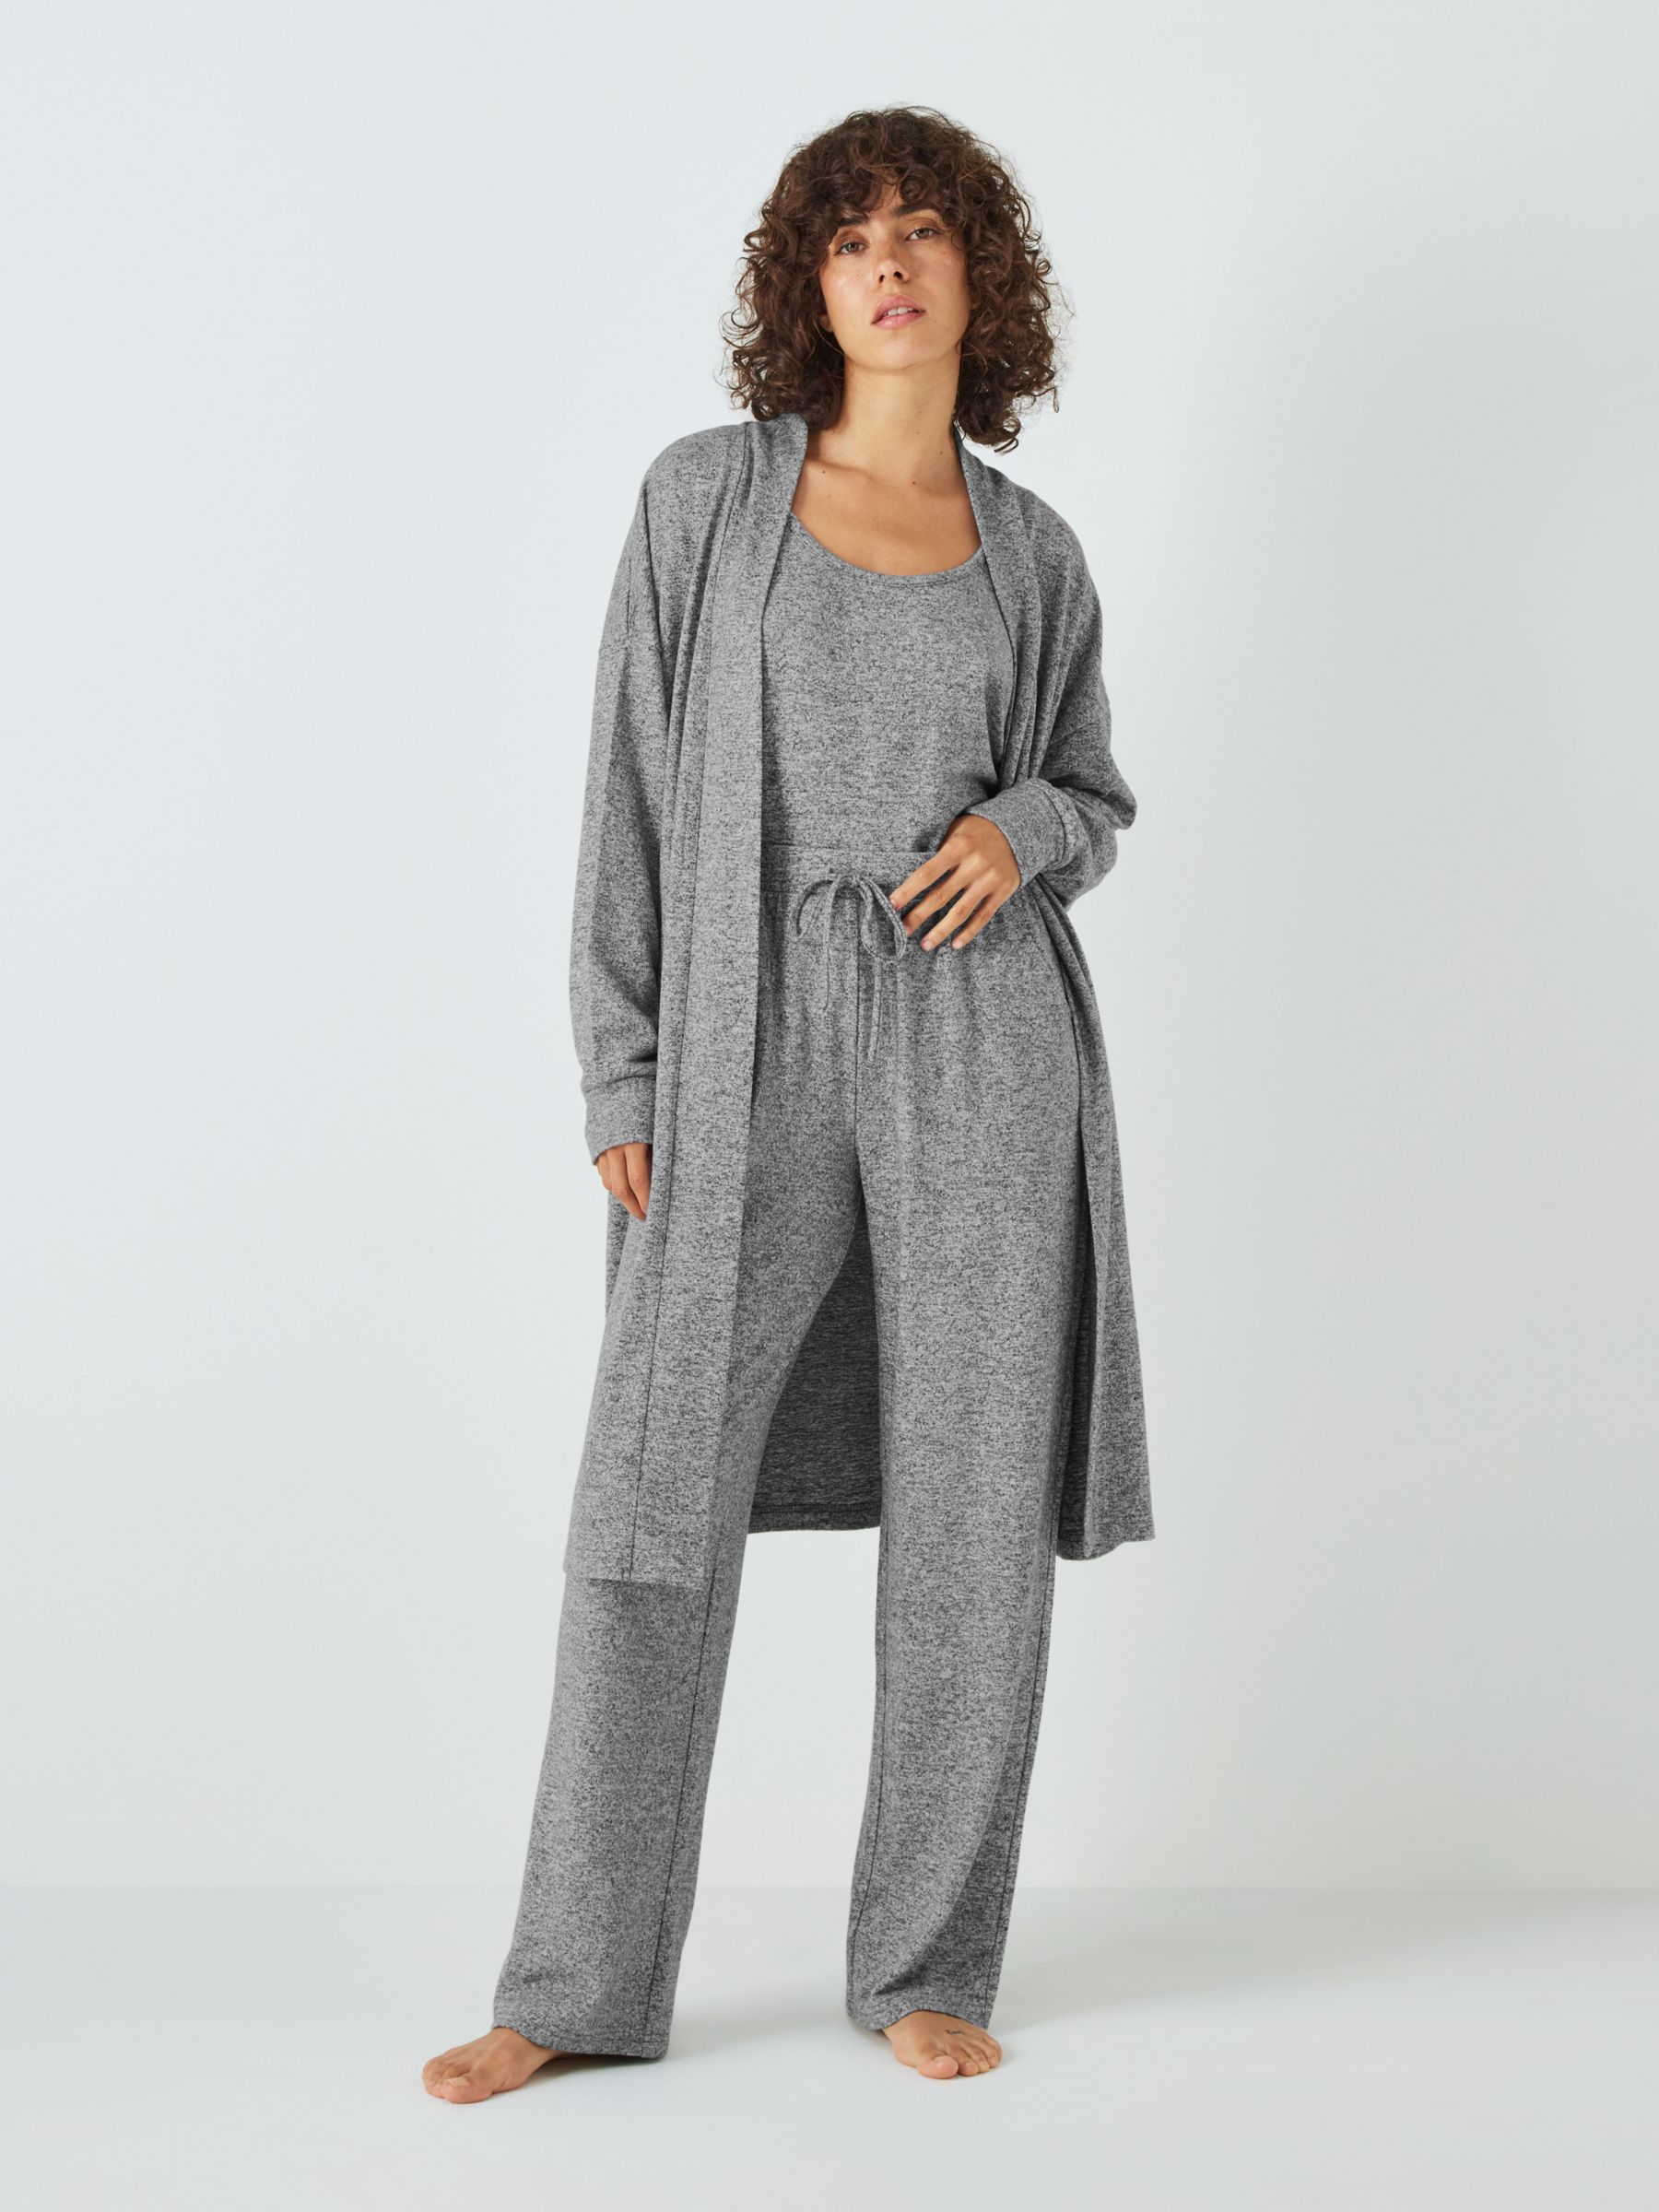 Women's Pyjamas, Women's Nightwear